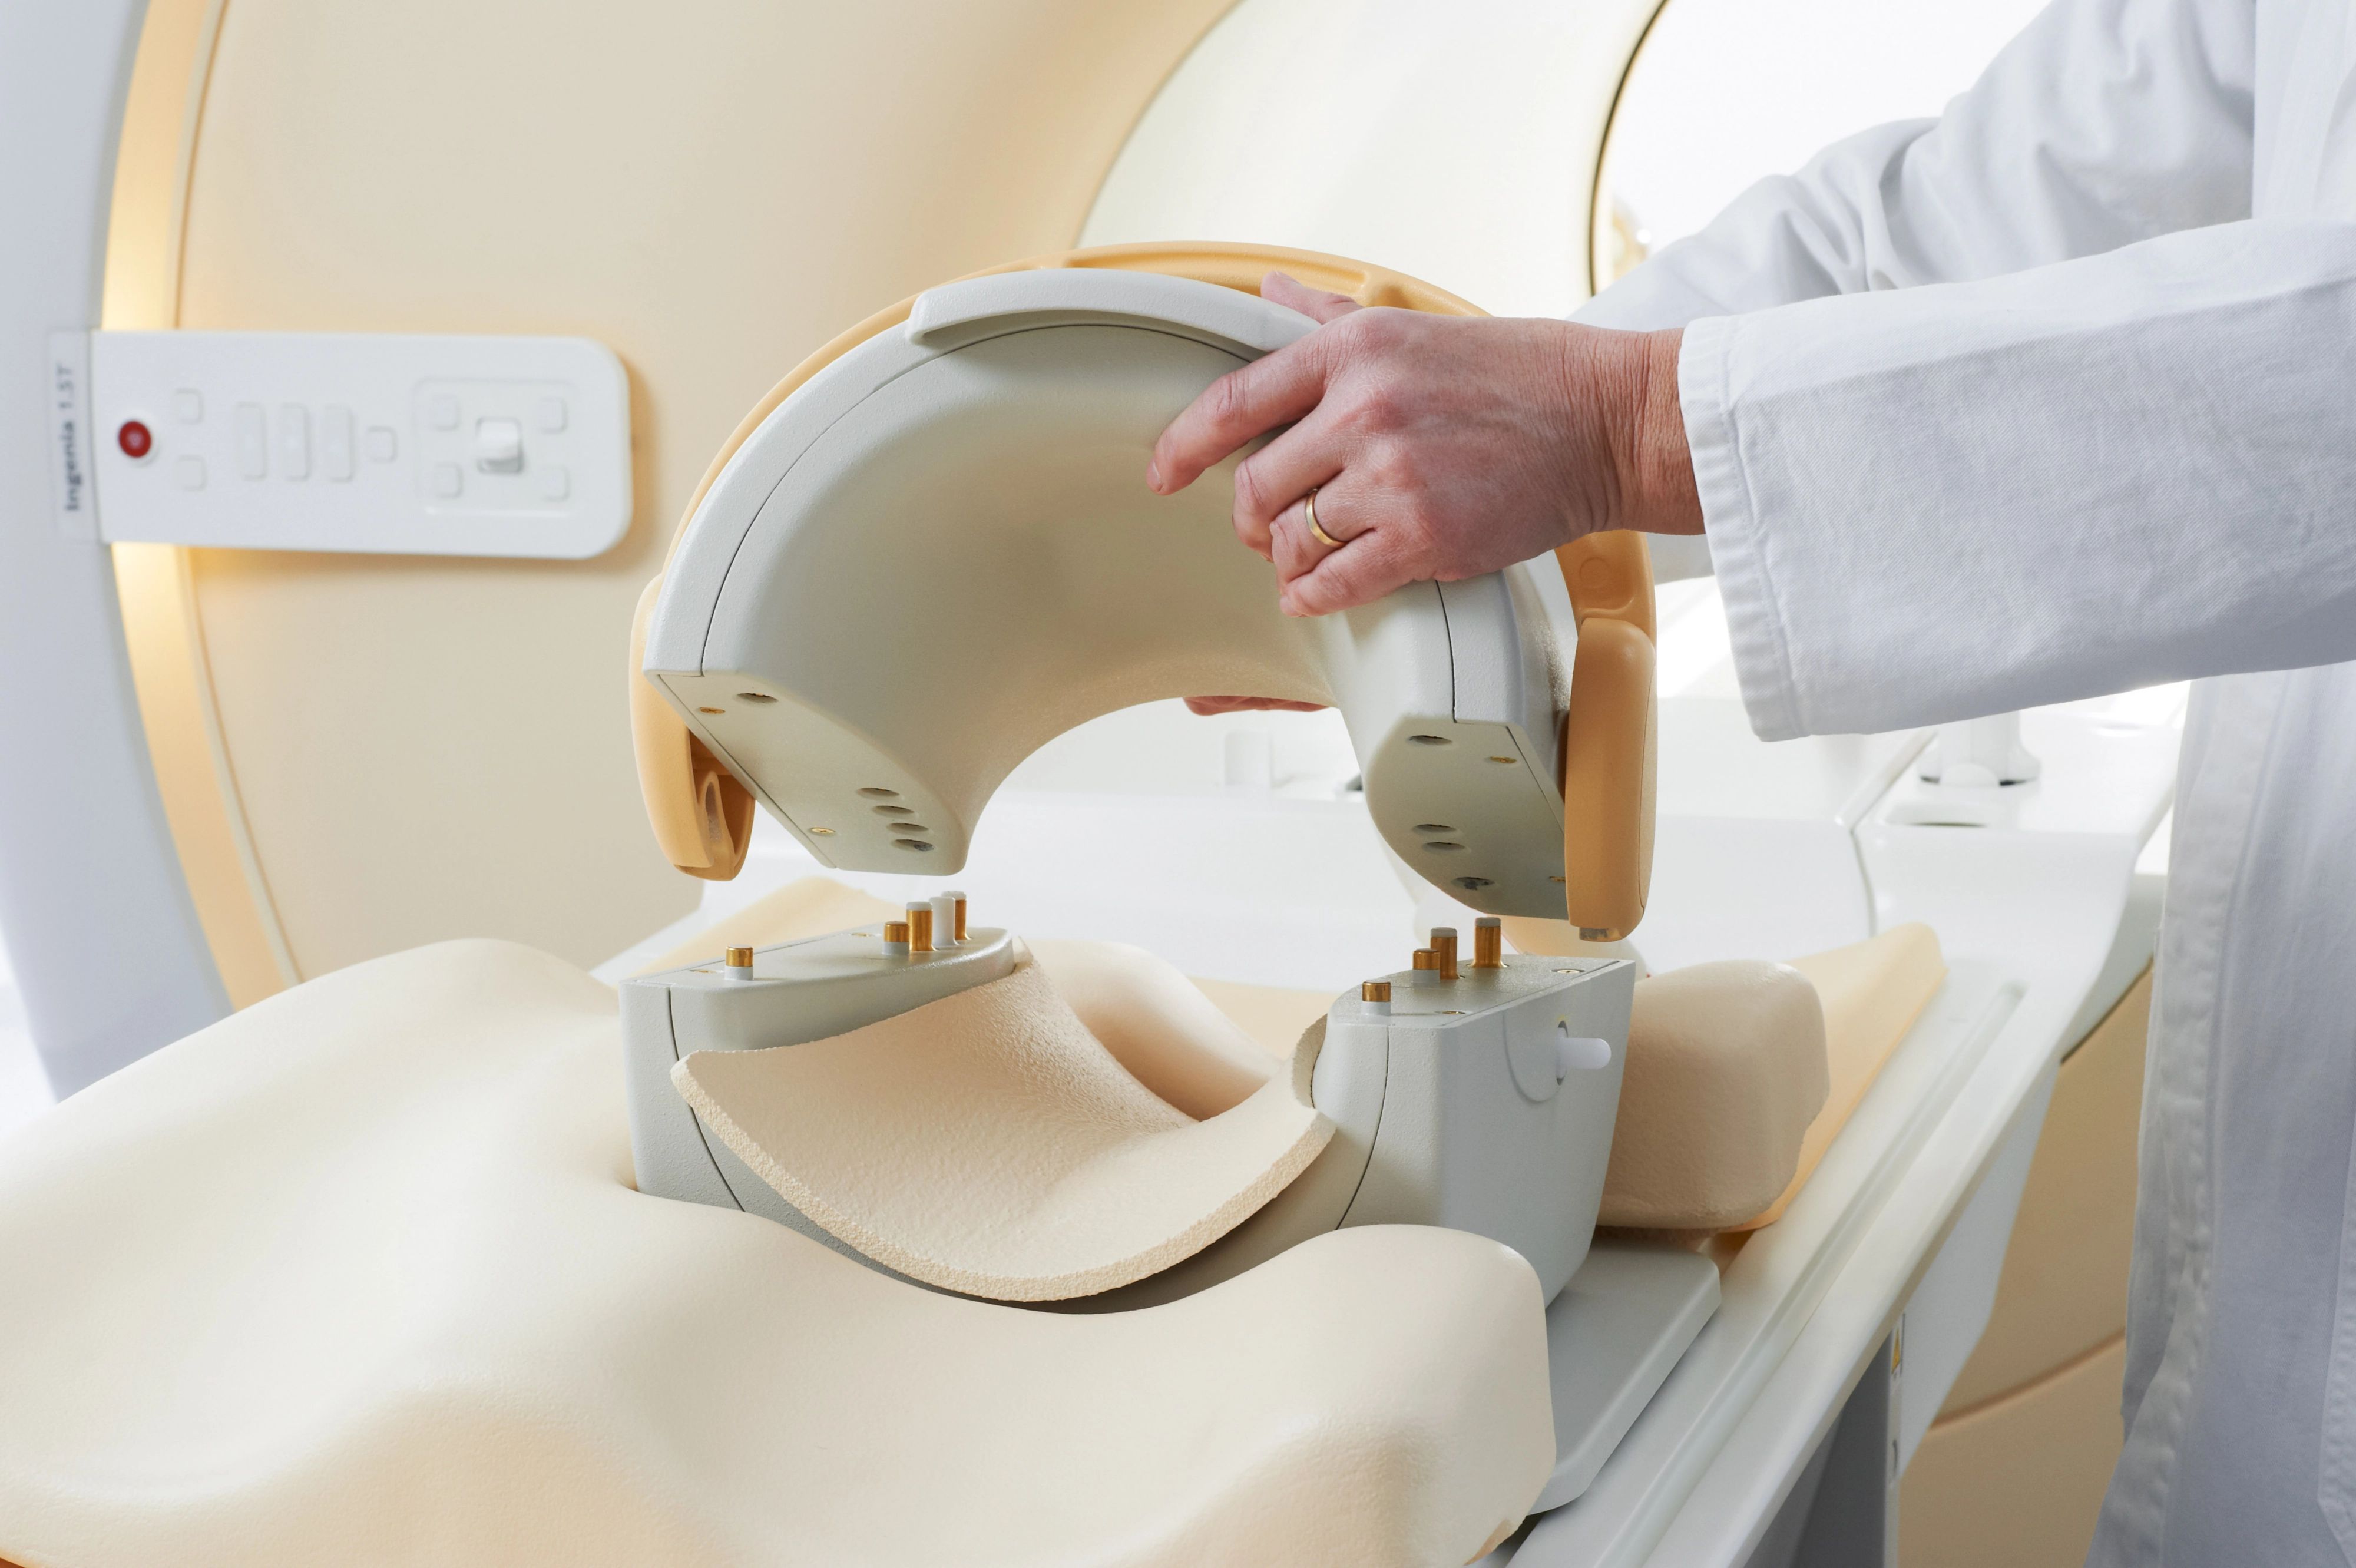 МРТ коленного сустава - оборудование и укладка